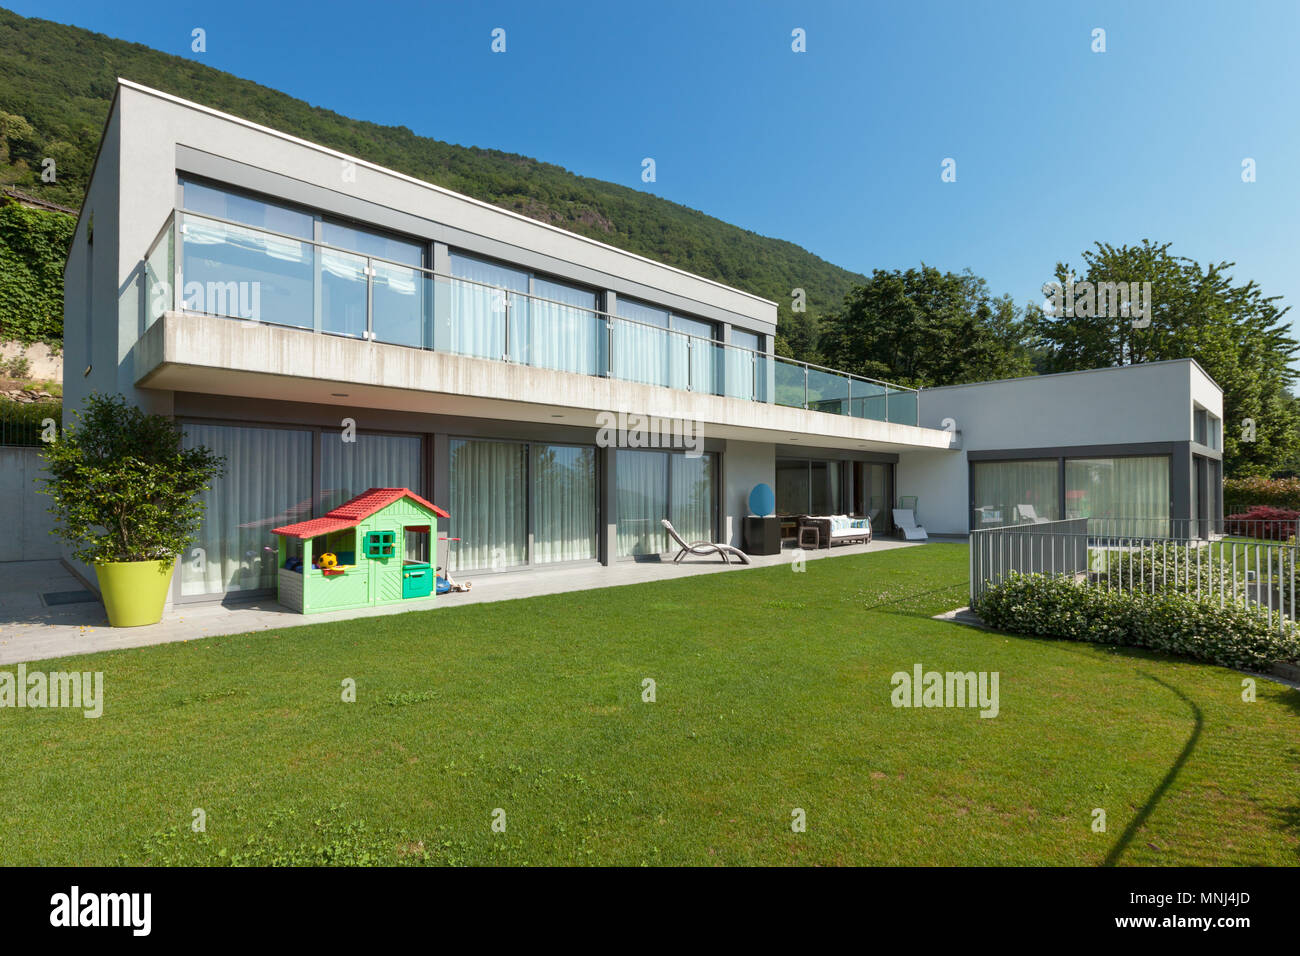 L'architecture, la maison blanche moderne avec jardin, en plein air Banque D'Images